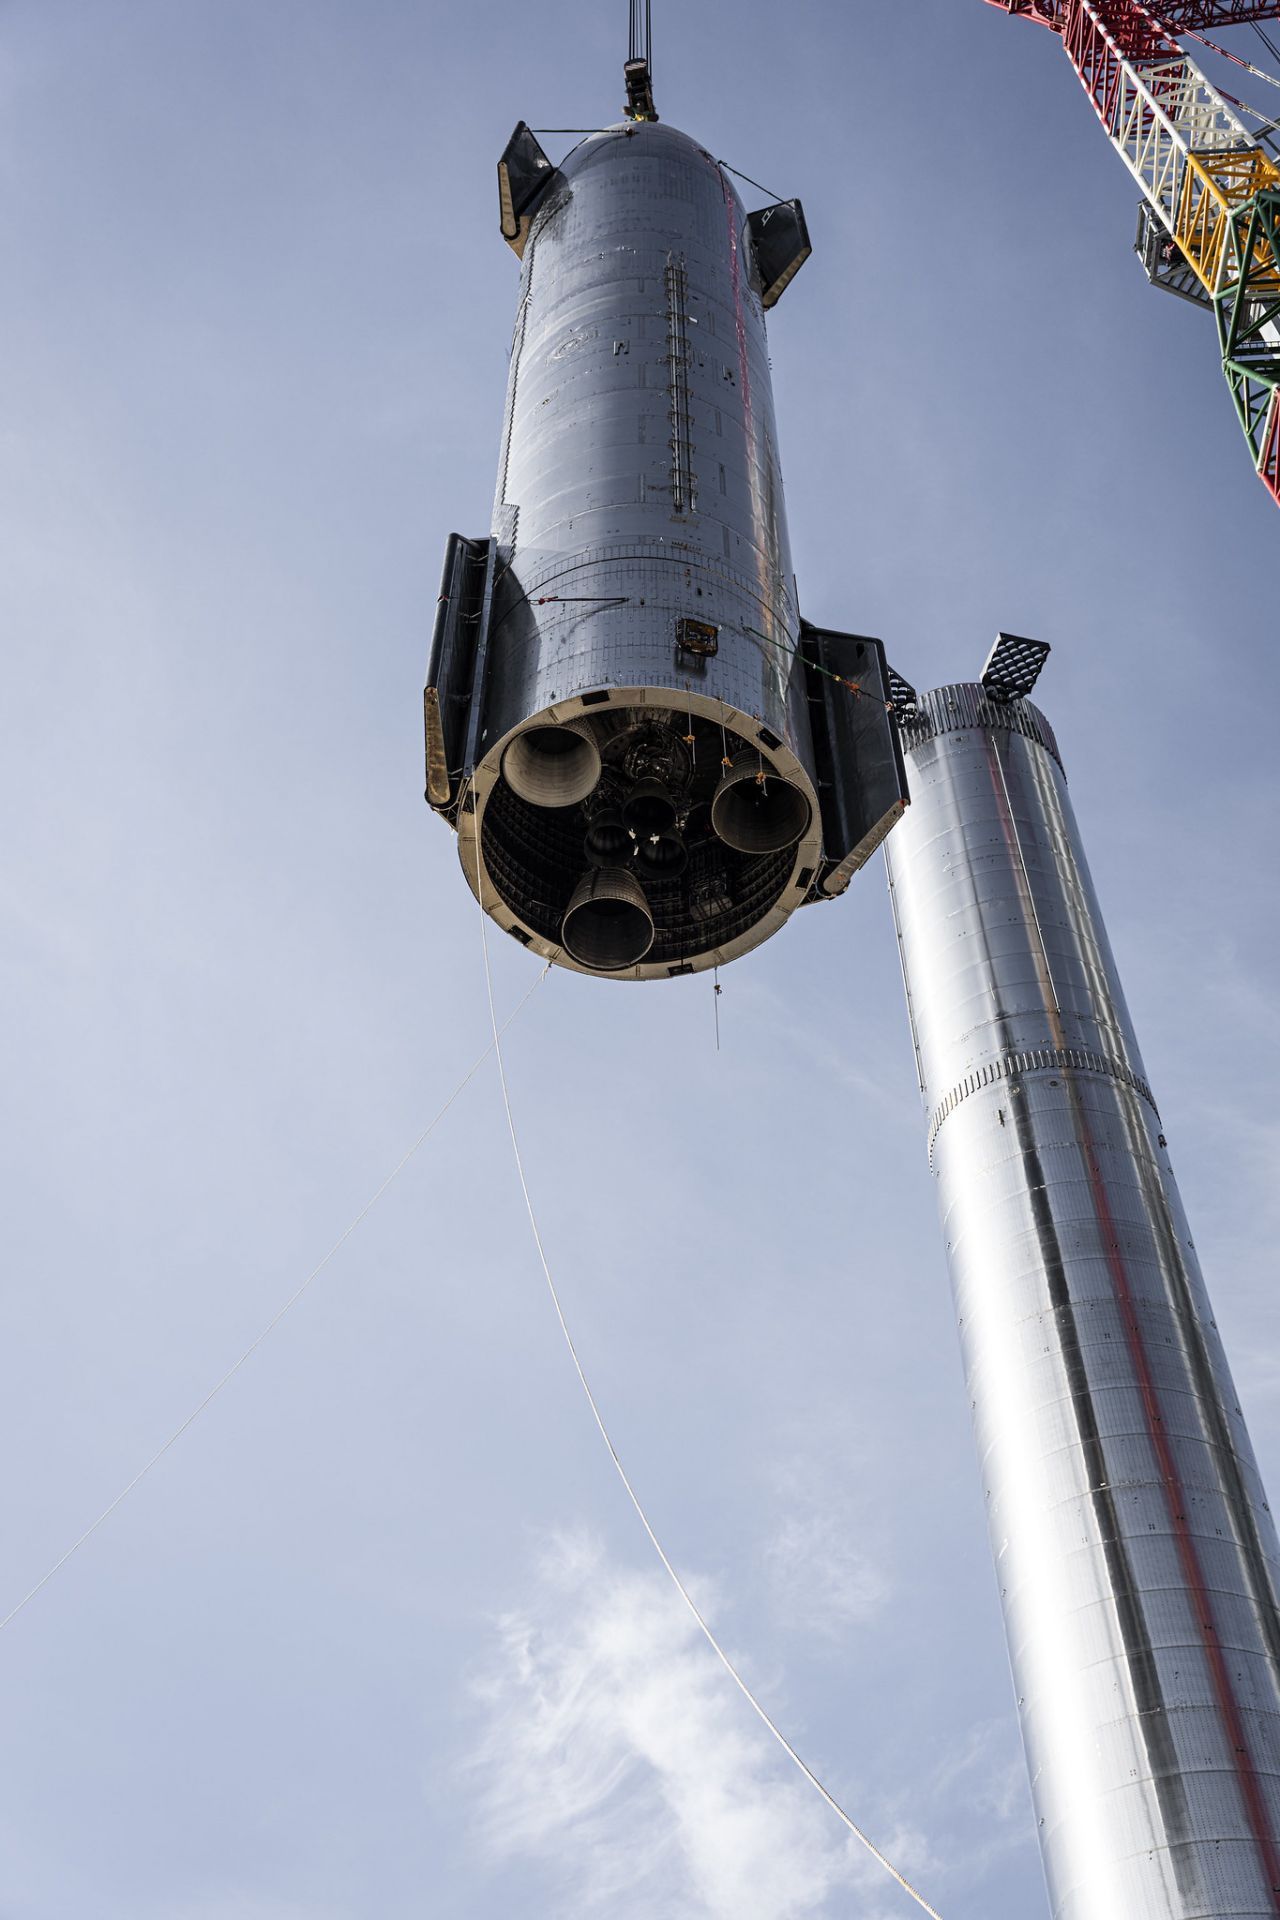 SpaceX baut das Starship aus Stahl. Das lässt sich gut schweißen und ist stabiler sowie günstiger als Aluminium.